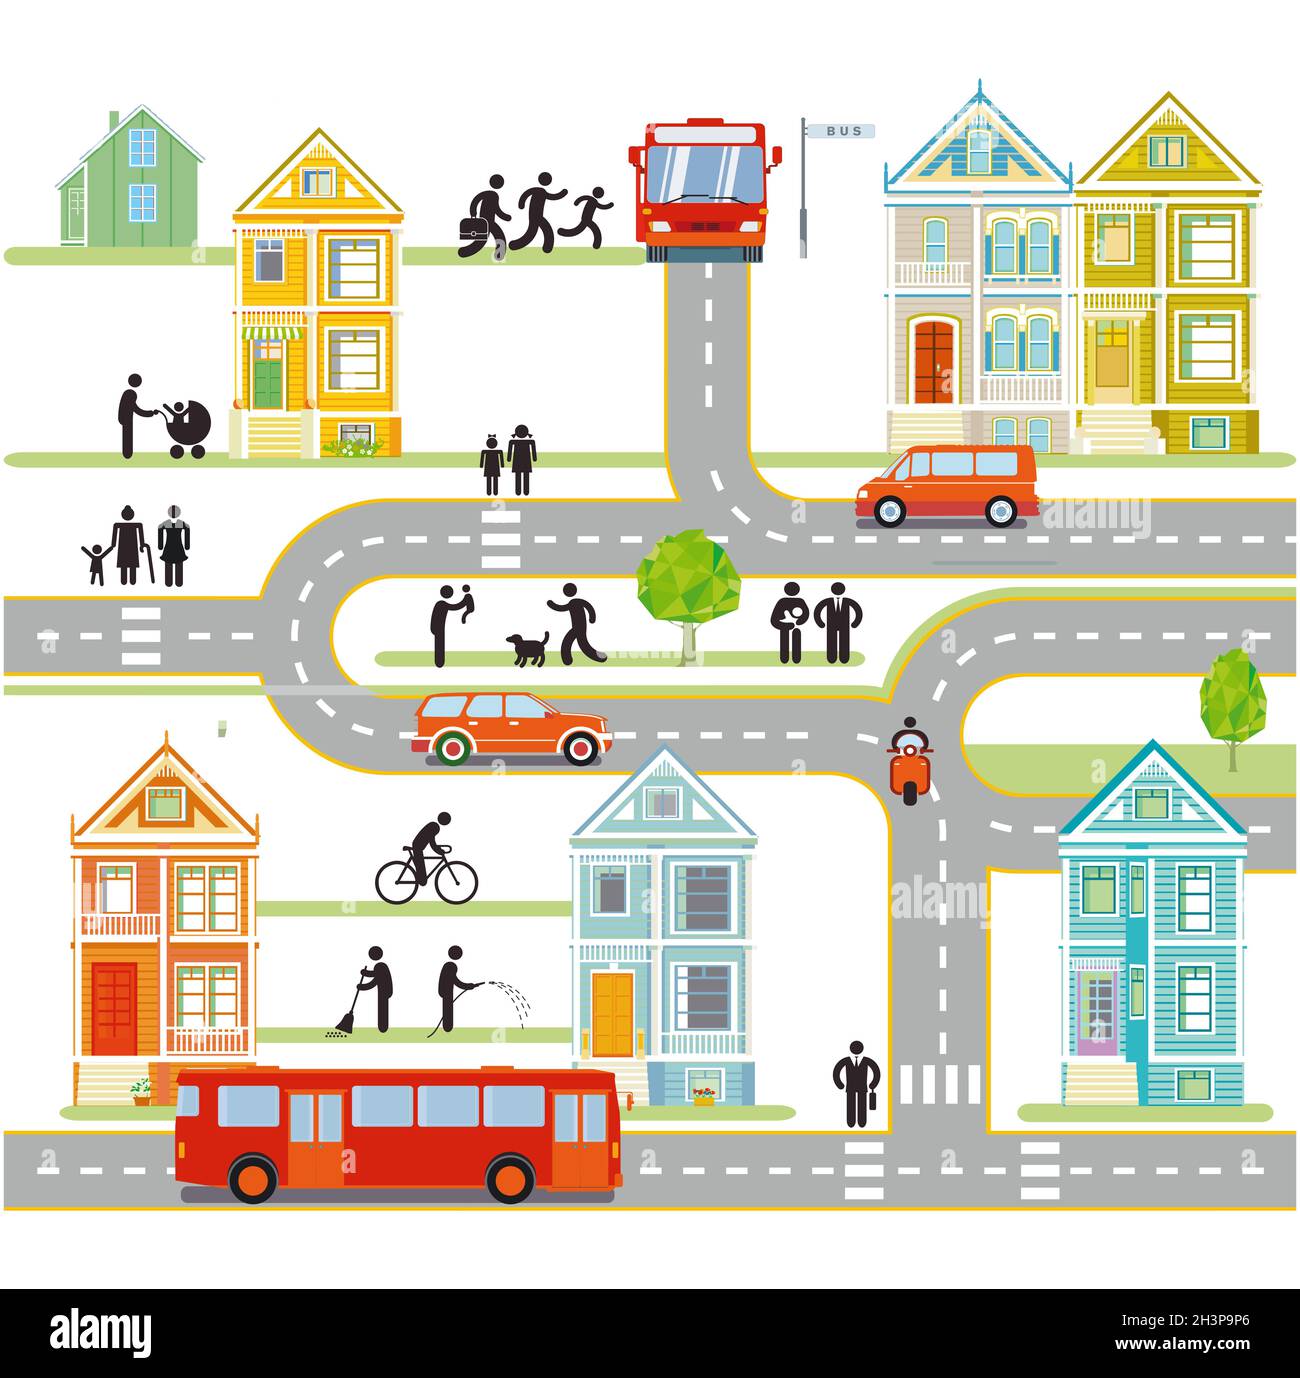 Silhouette de ville avec circulation et personnes, infographie, communauté, illustration de la carte de la ville Banque D'Images